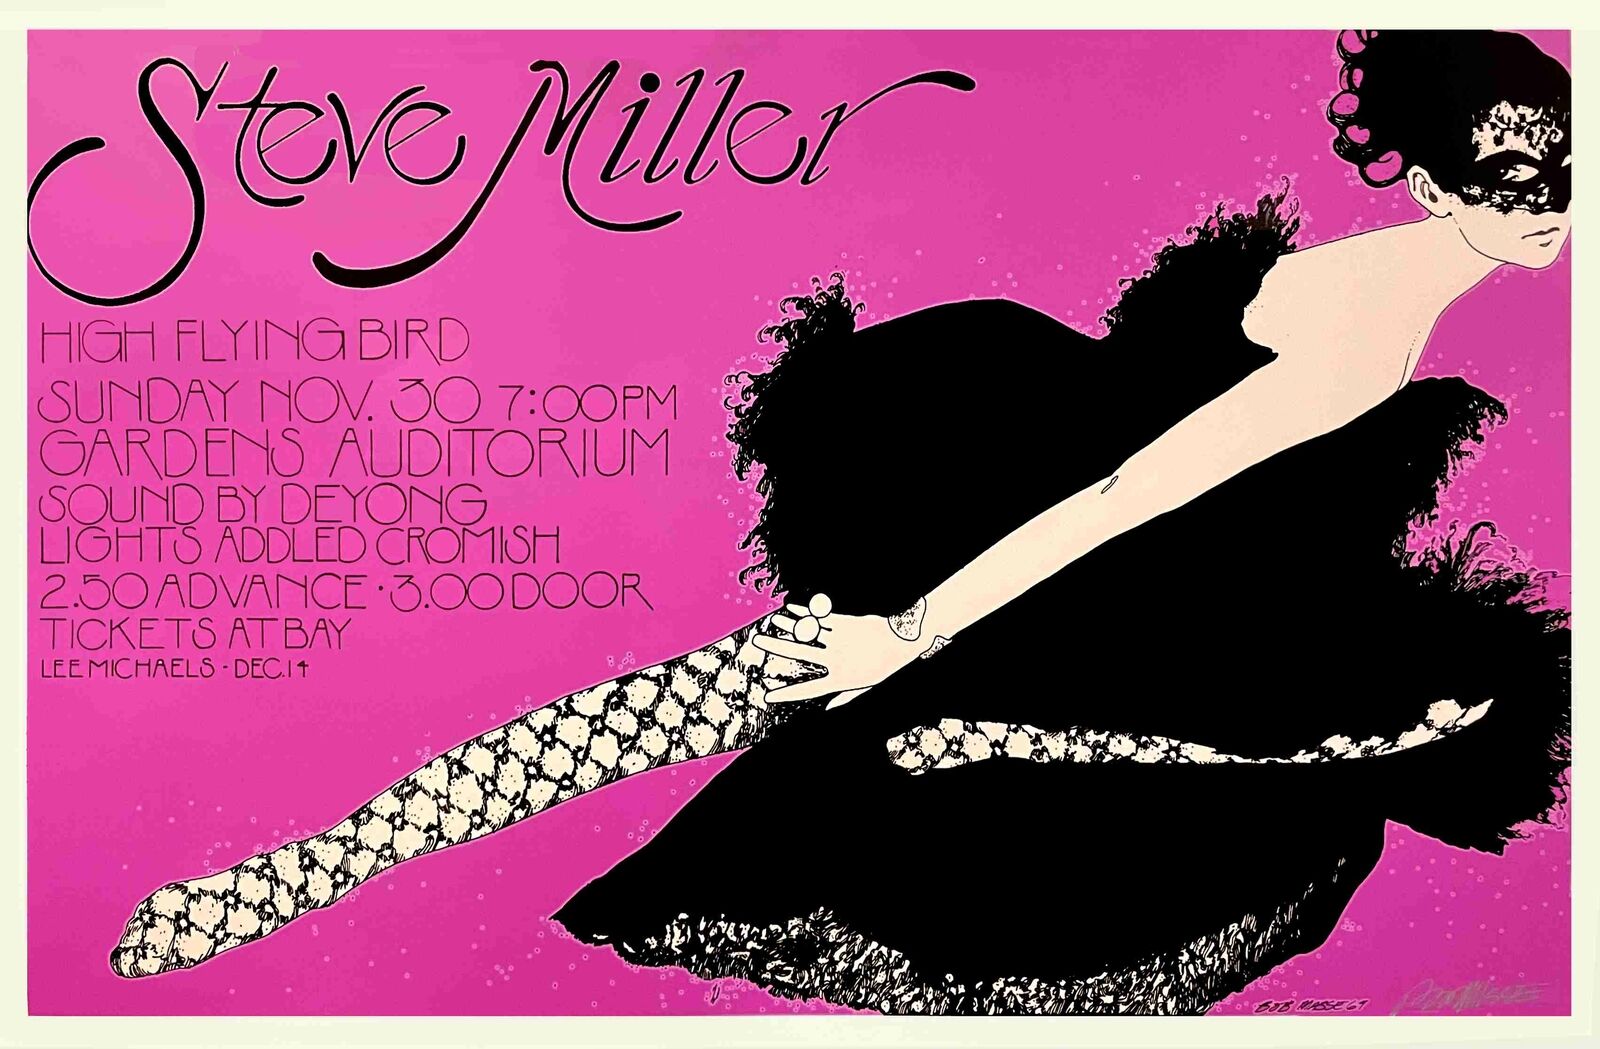 Steve Miller "Ballerina" Poster Vancouver 1969